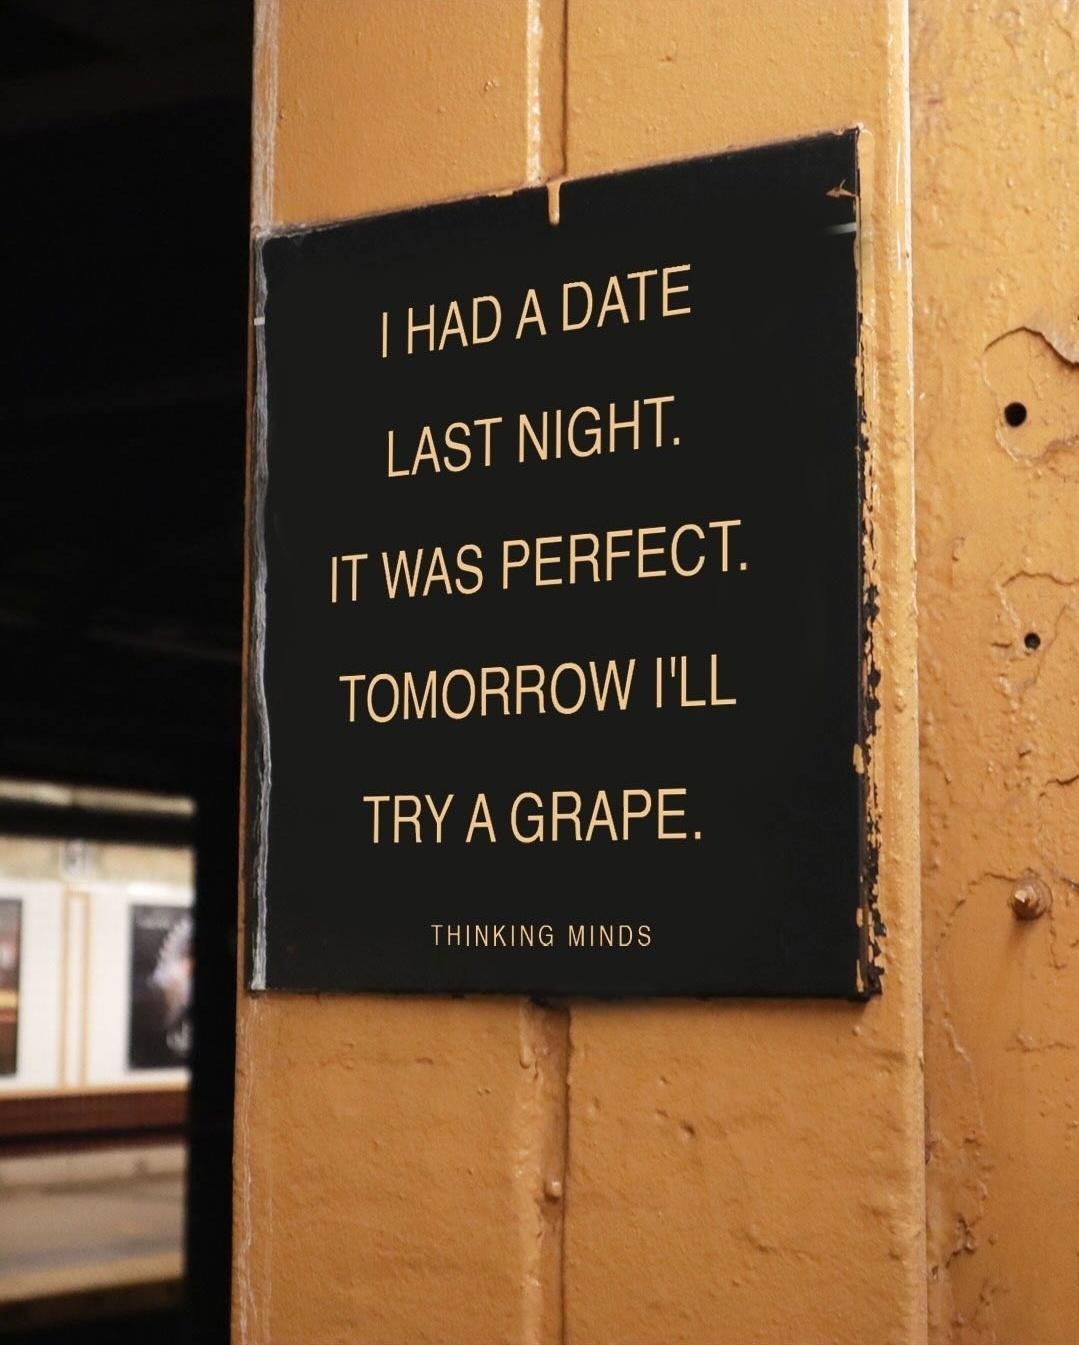 Please don’t grape your dates